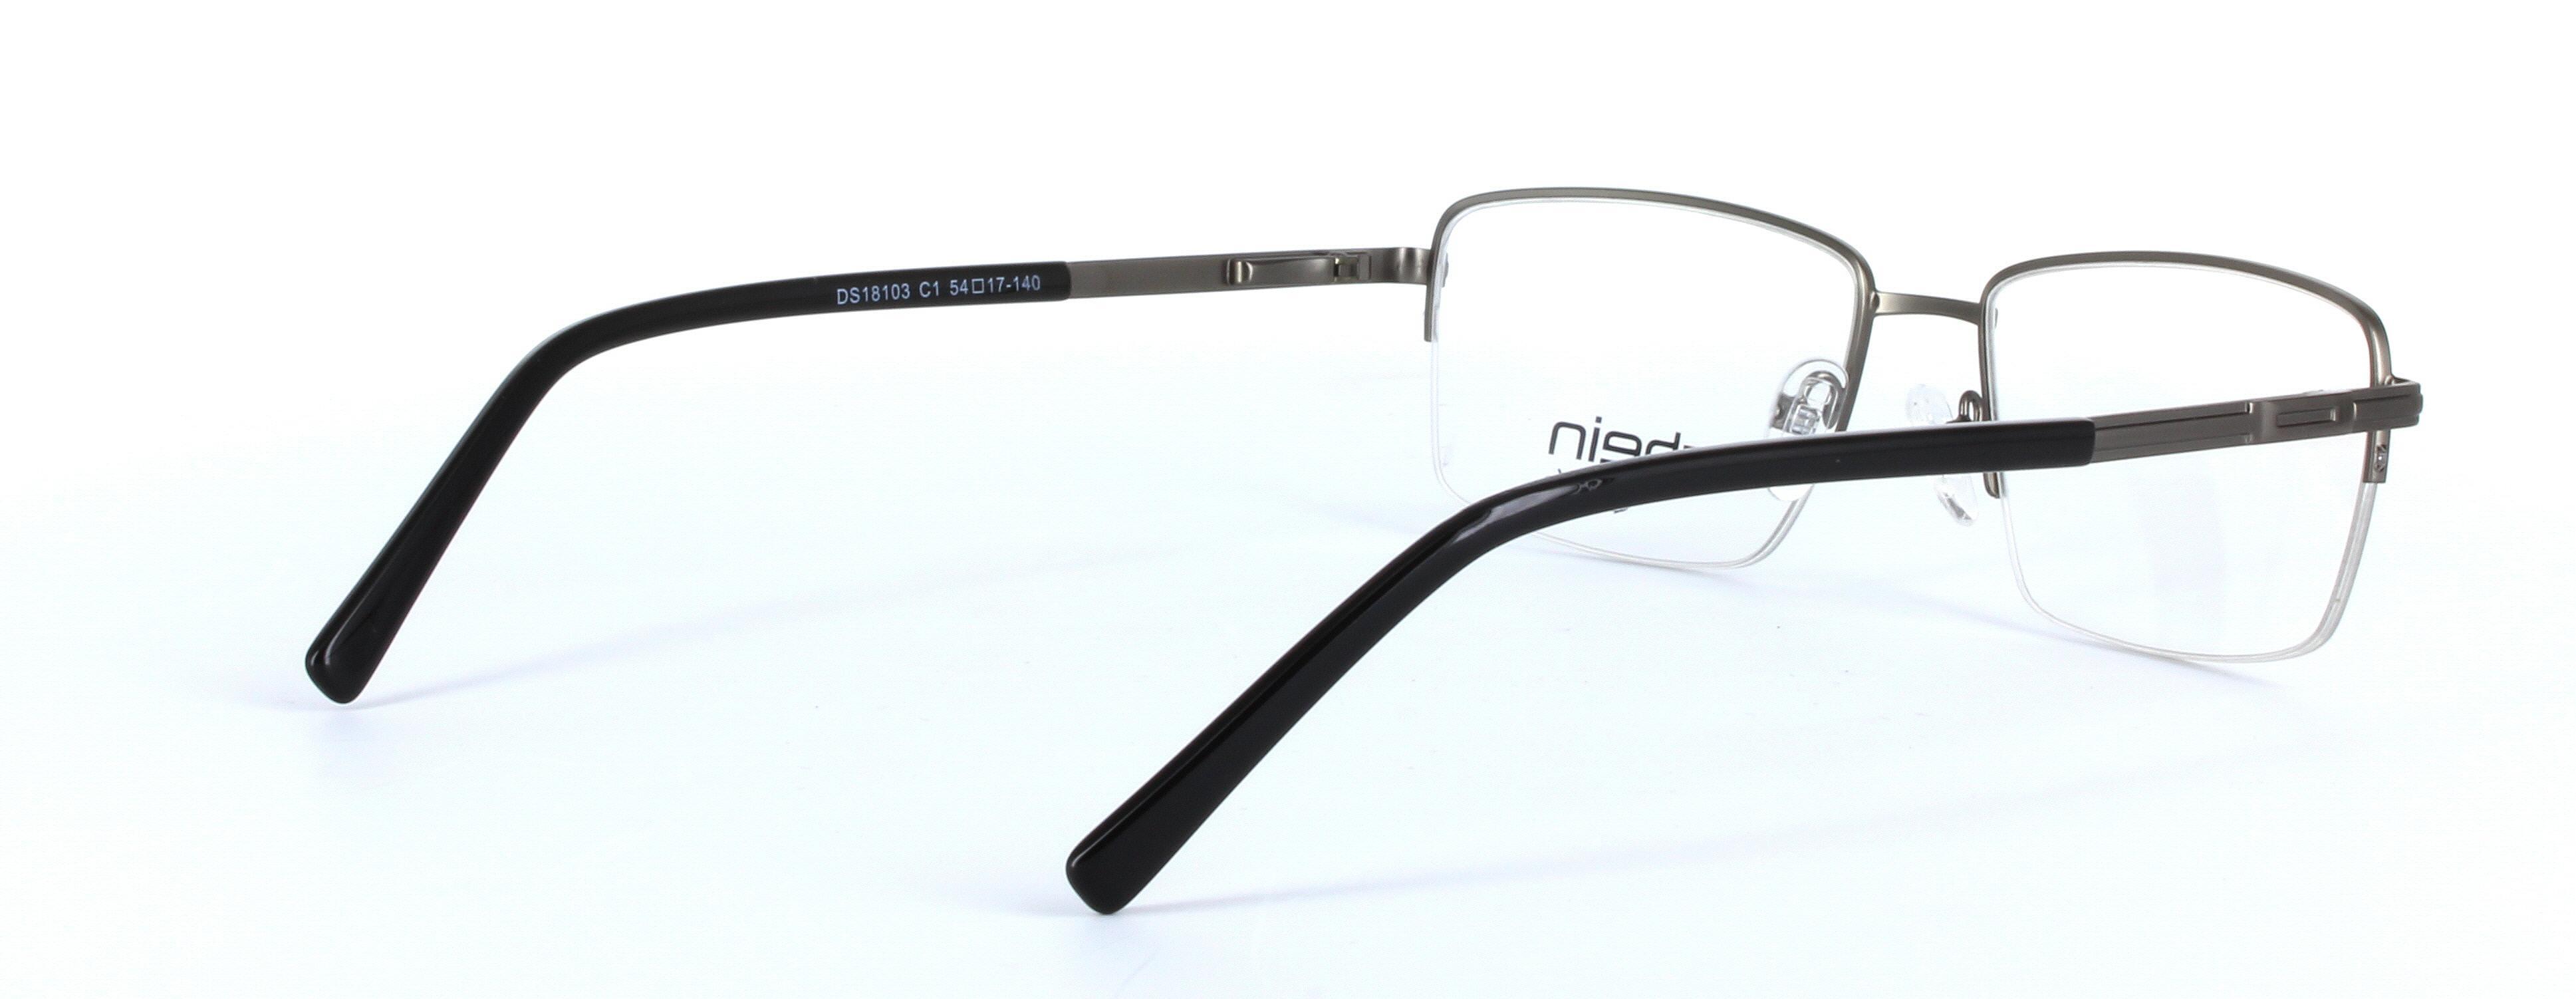 Denver Black Semi Rimless Rectangular Metal Glasses - Image View 4